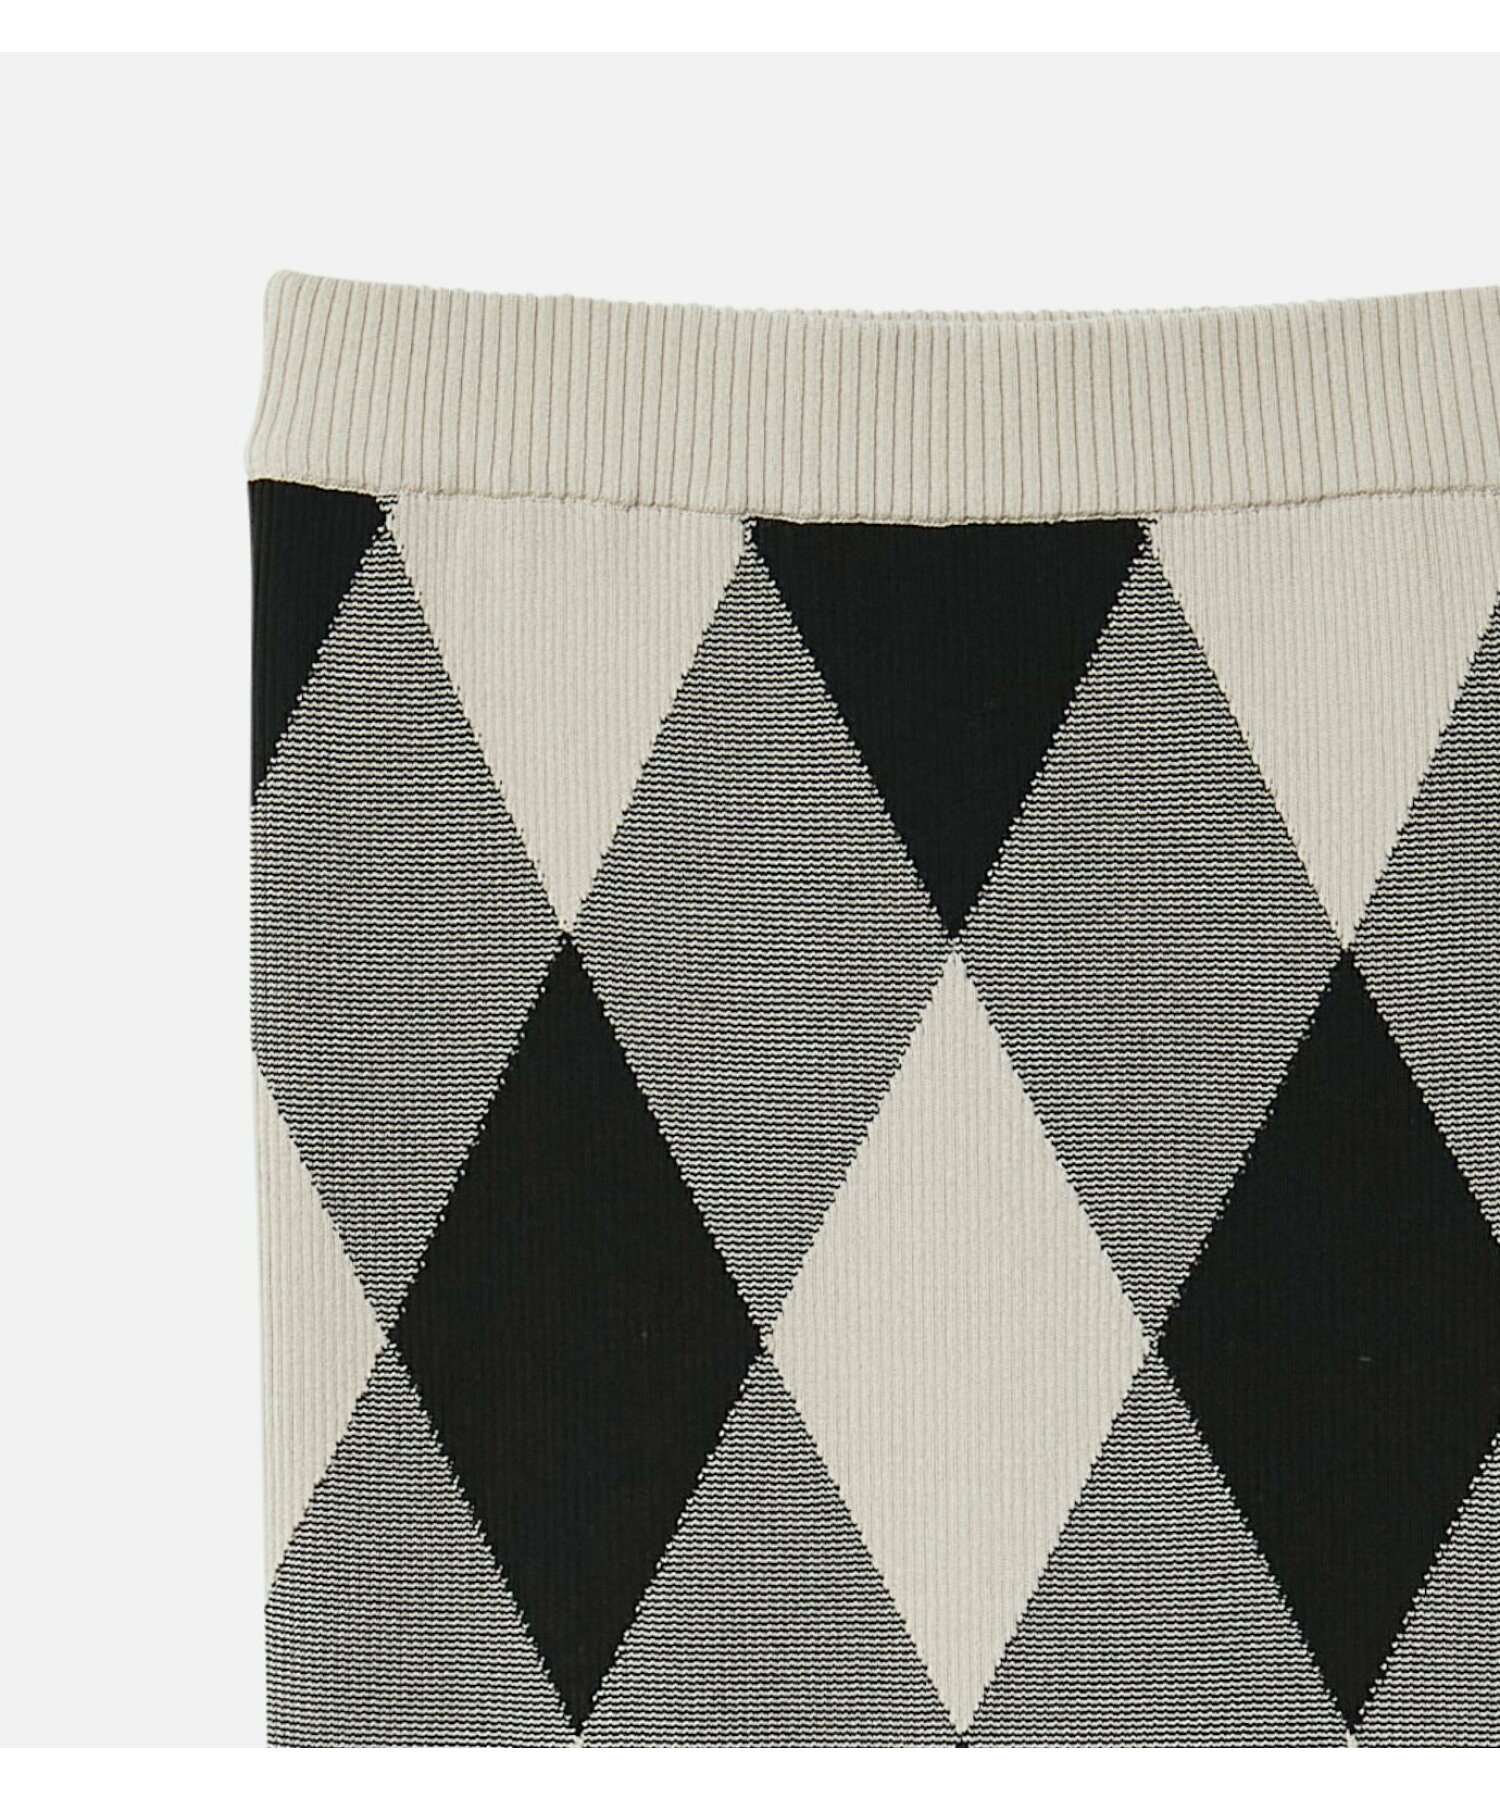 マトラッセパターンリブニットスカート / Matelasse Pattern Rib Knit Skirt